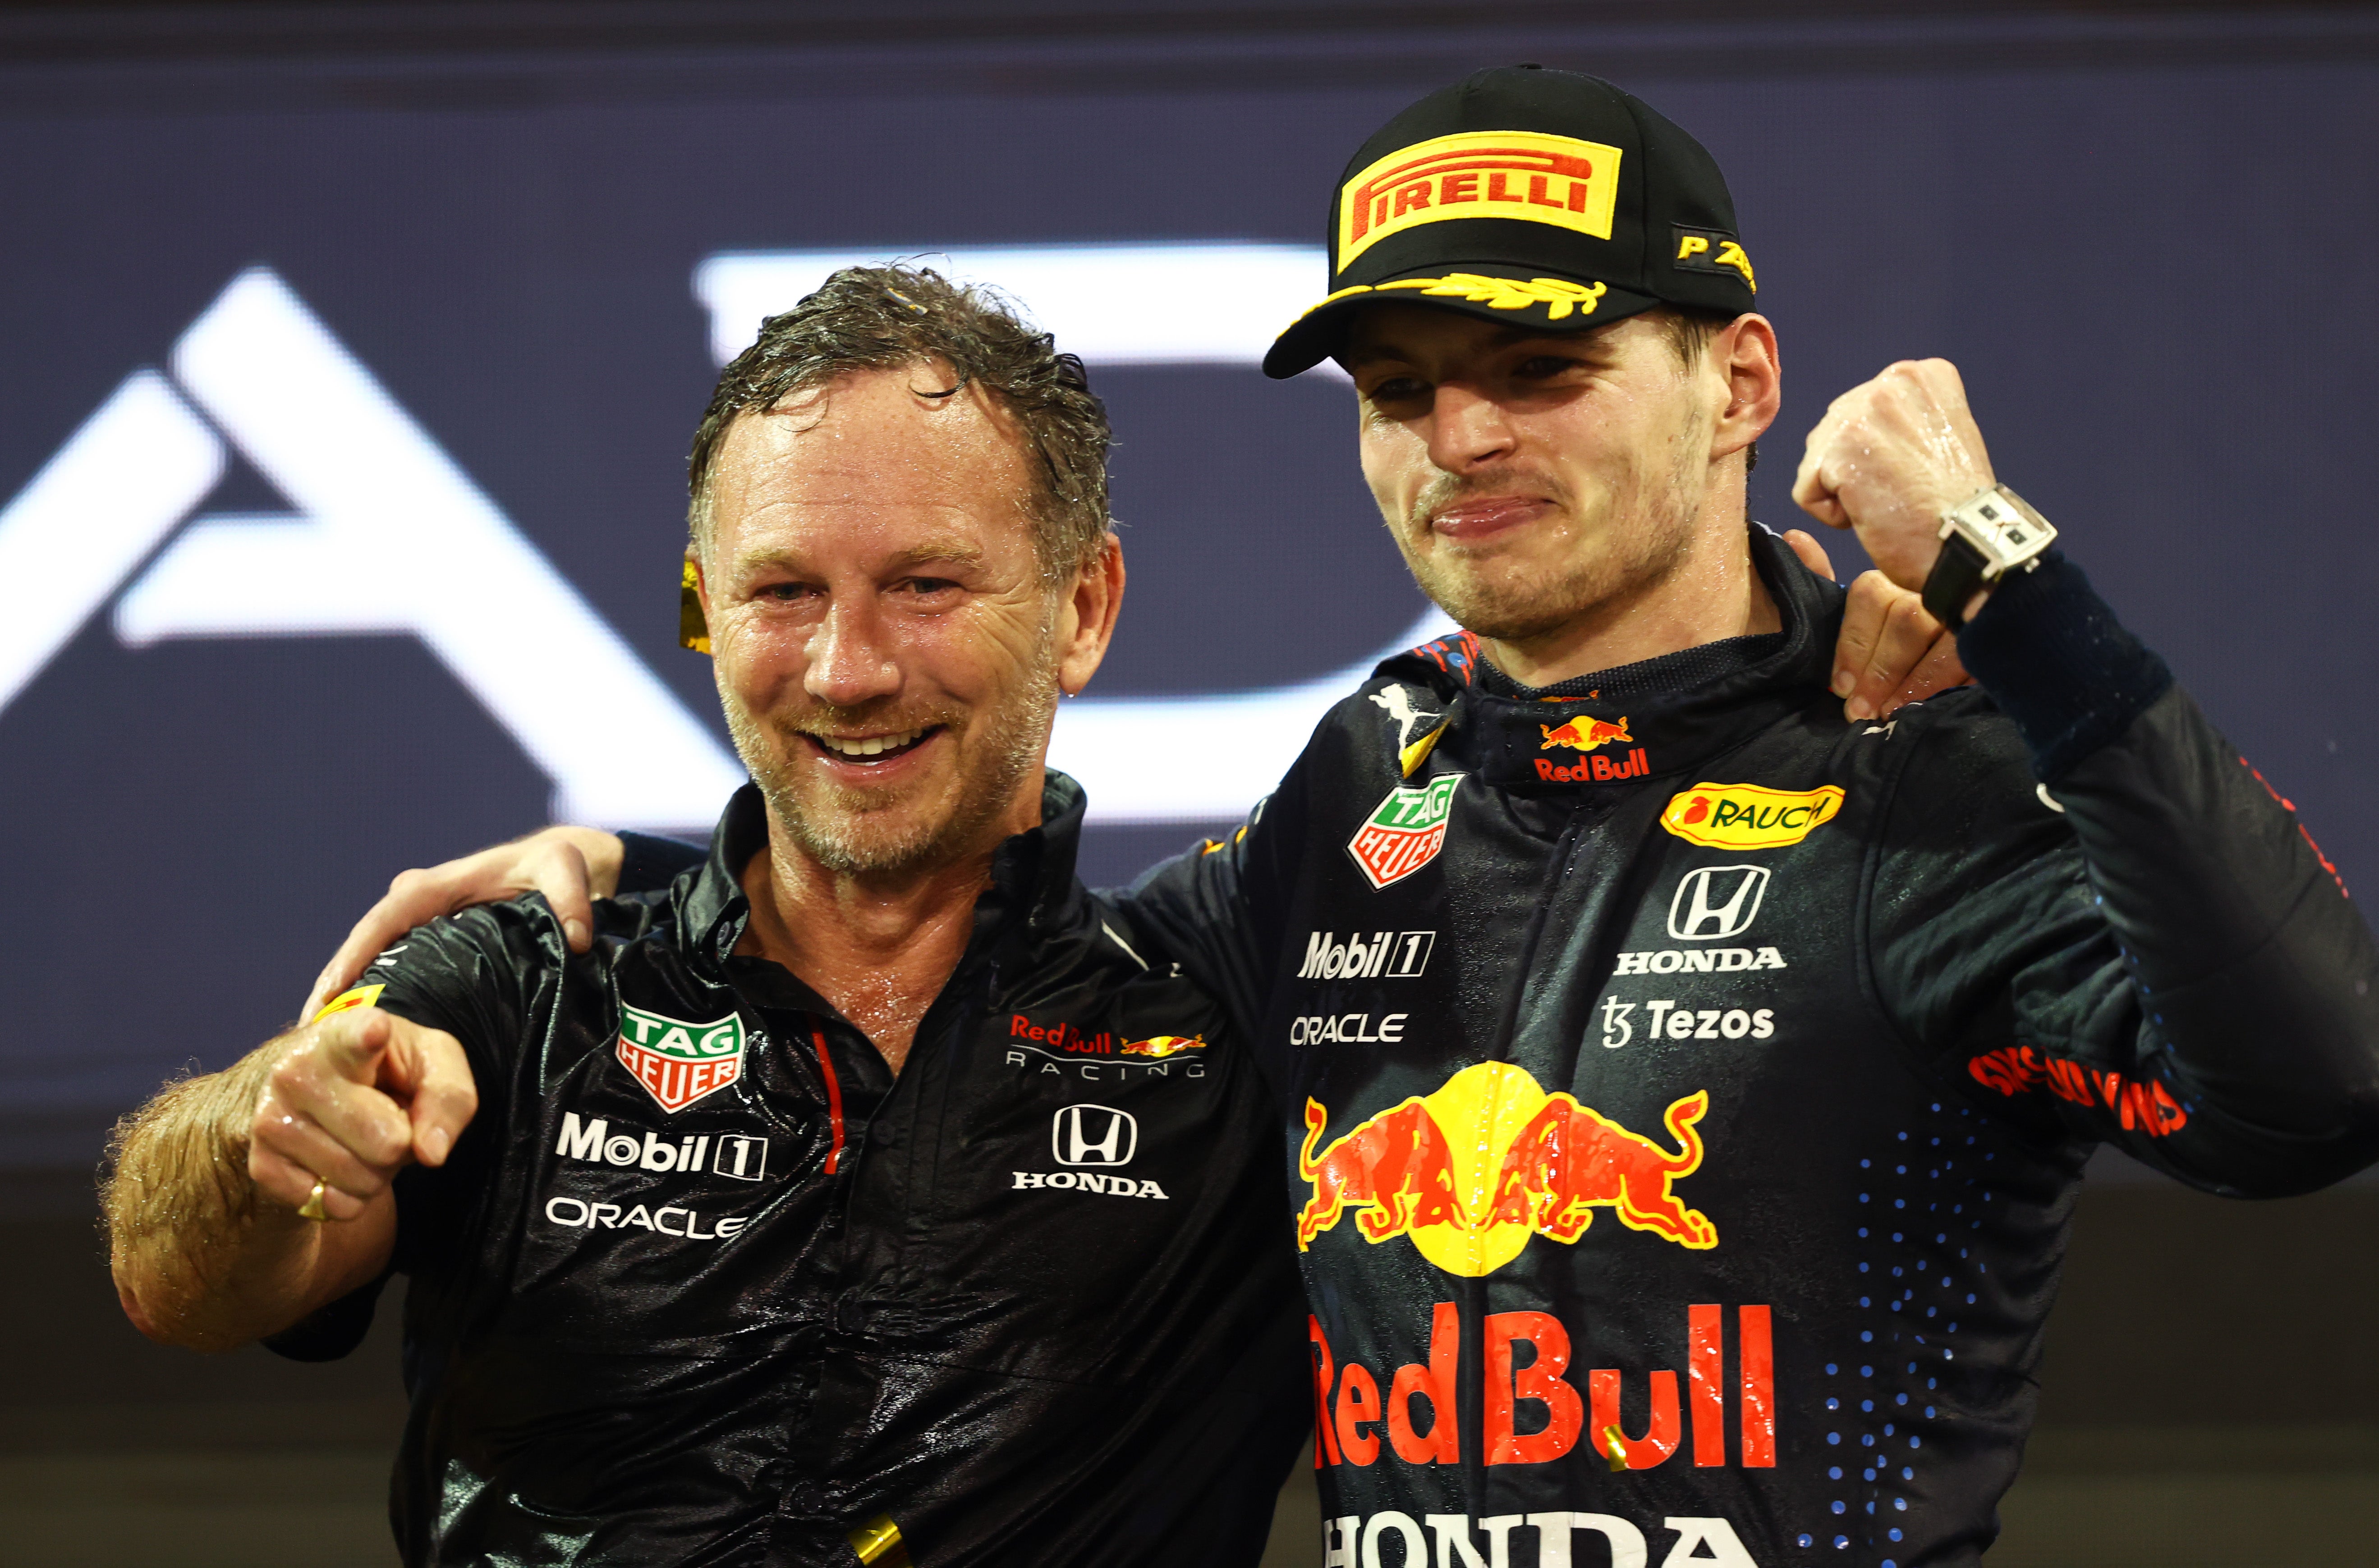 Christian Horner (left) has defended the legitimacy of Max Verstappen’s title win